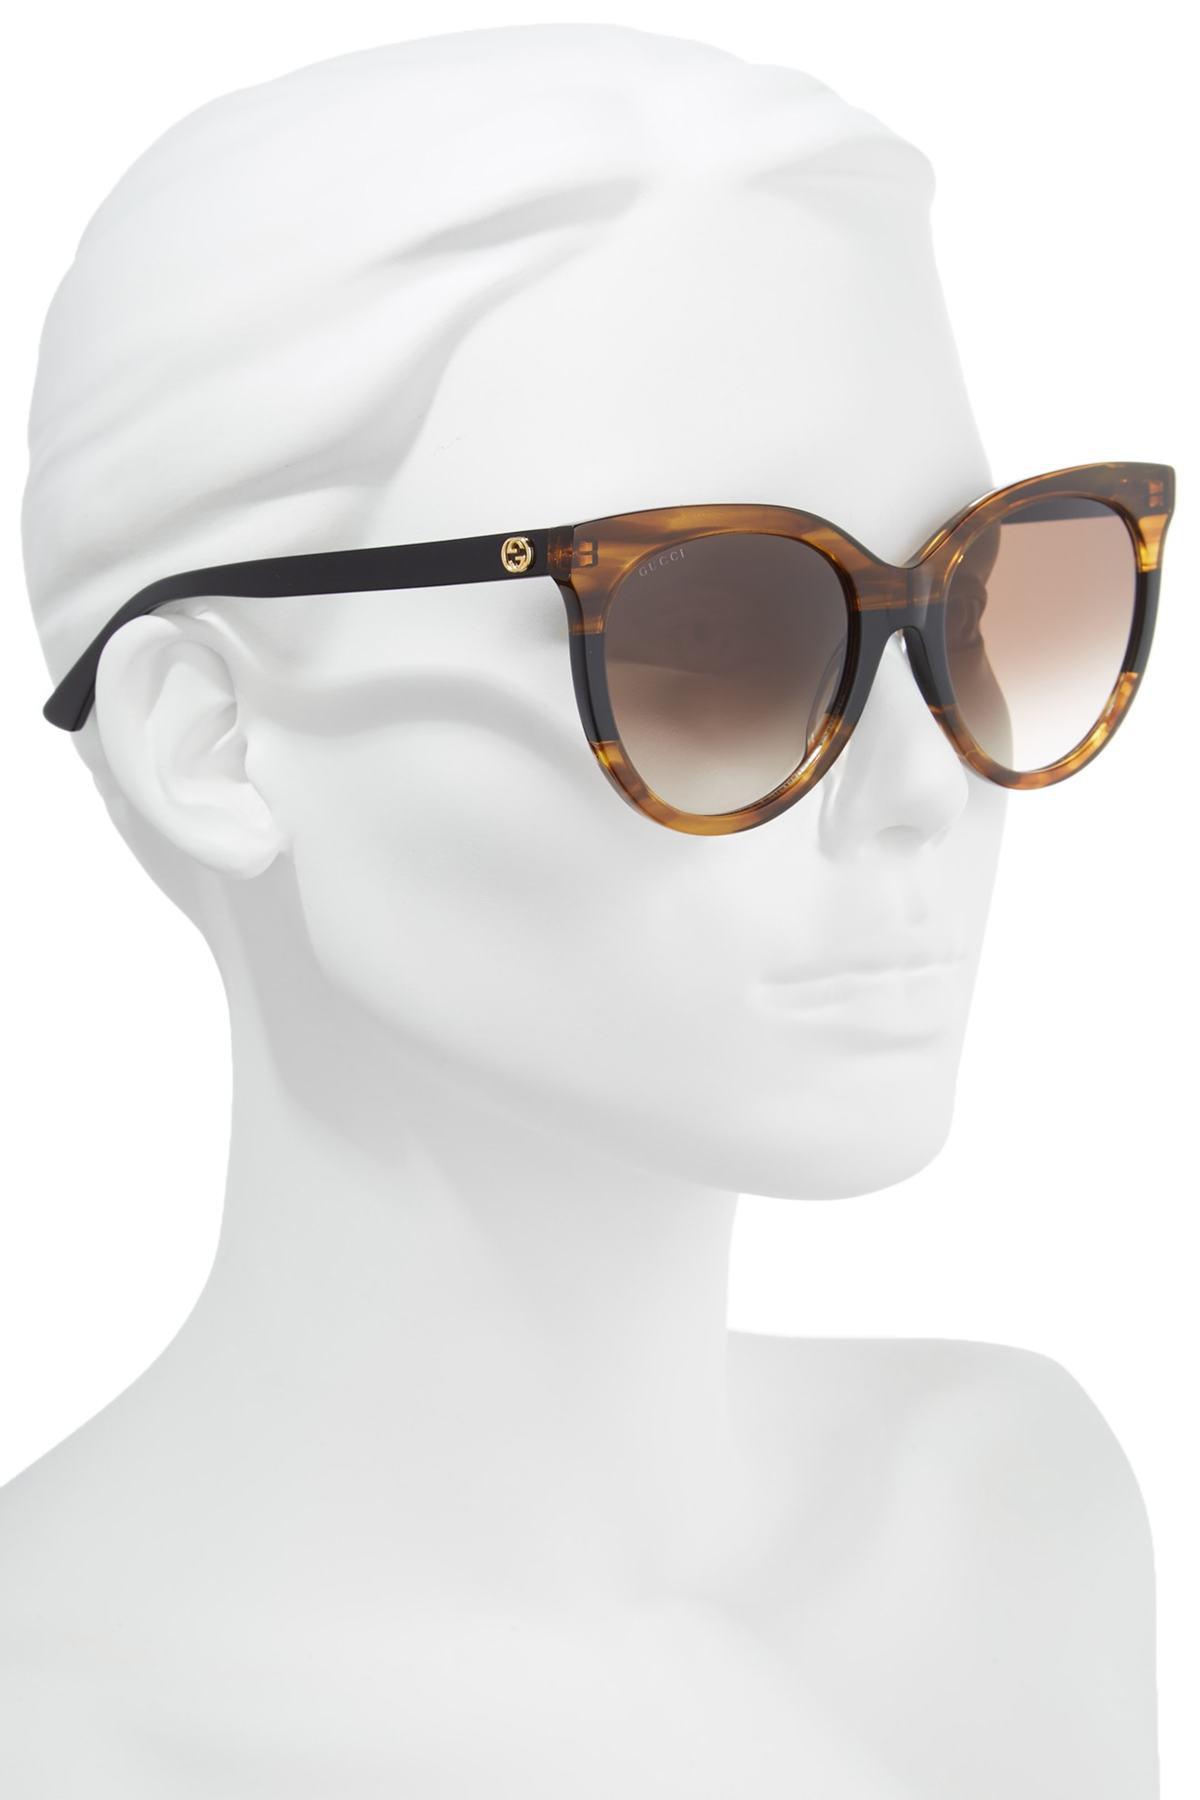 gucci 55mm round sunglasses